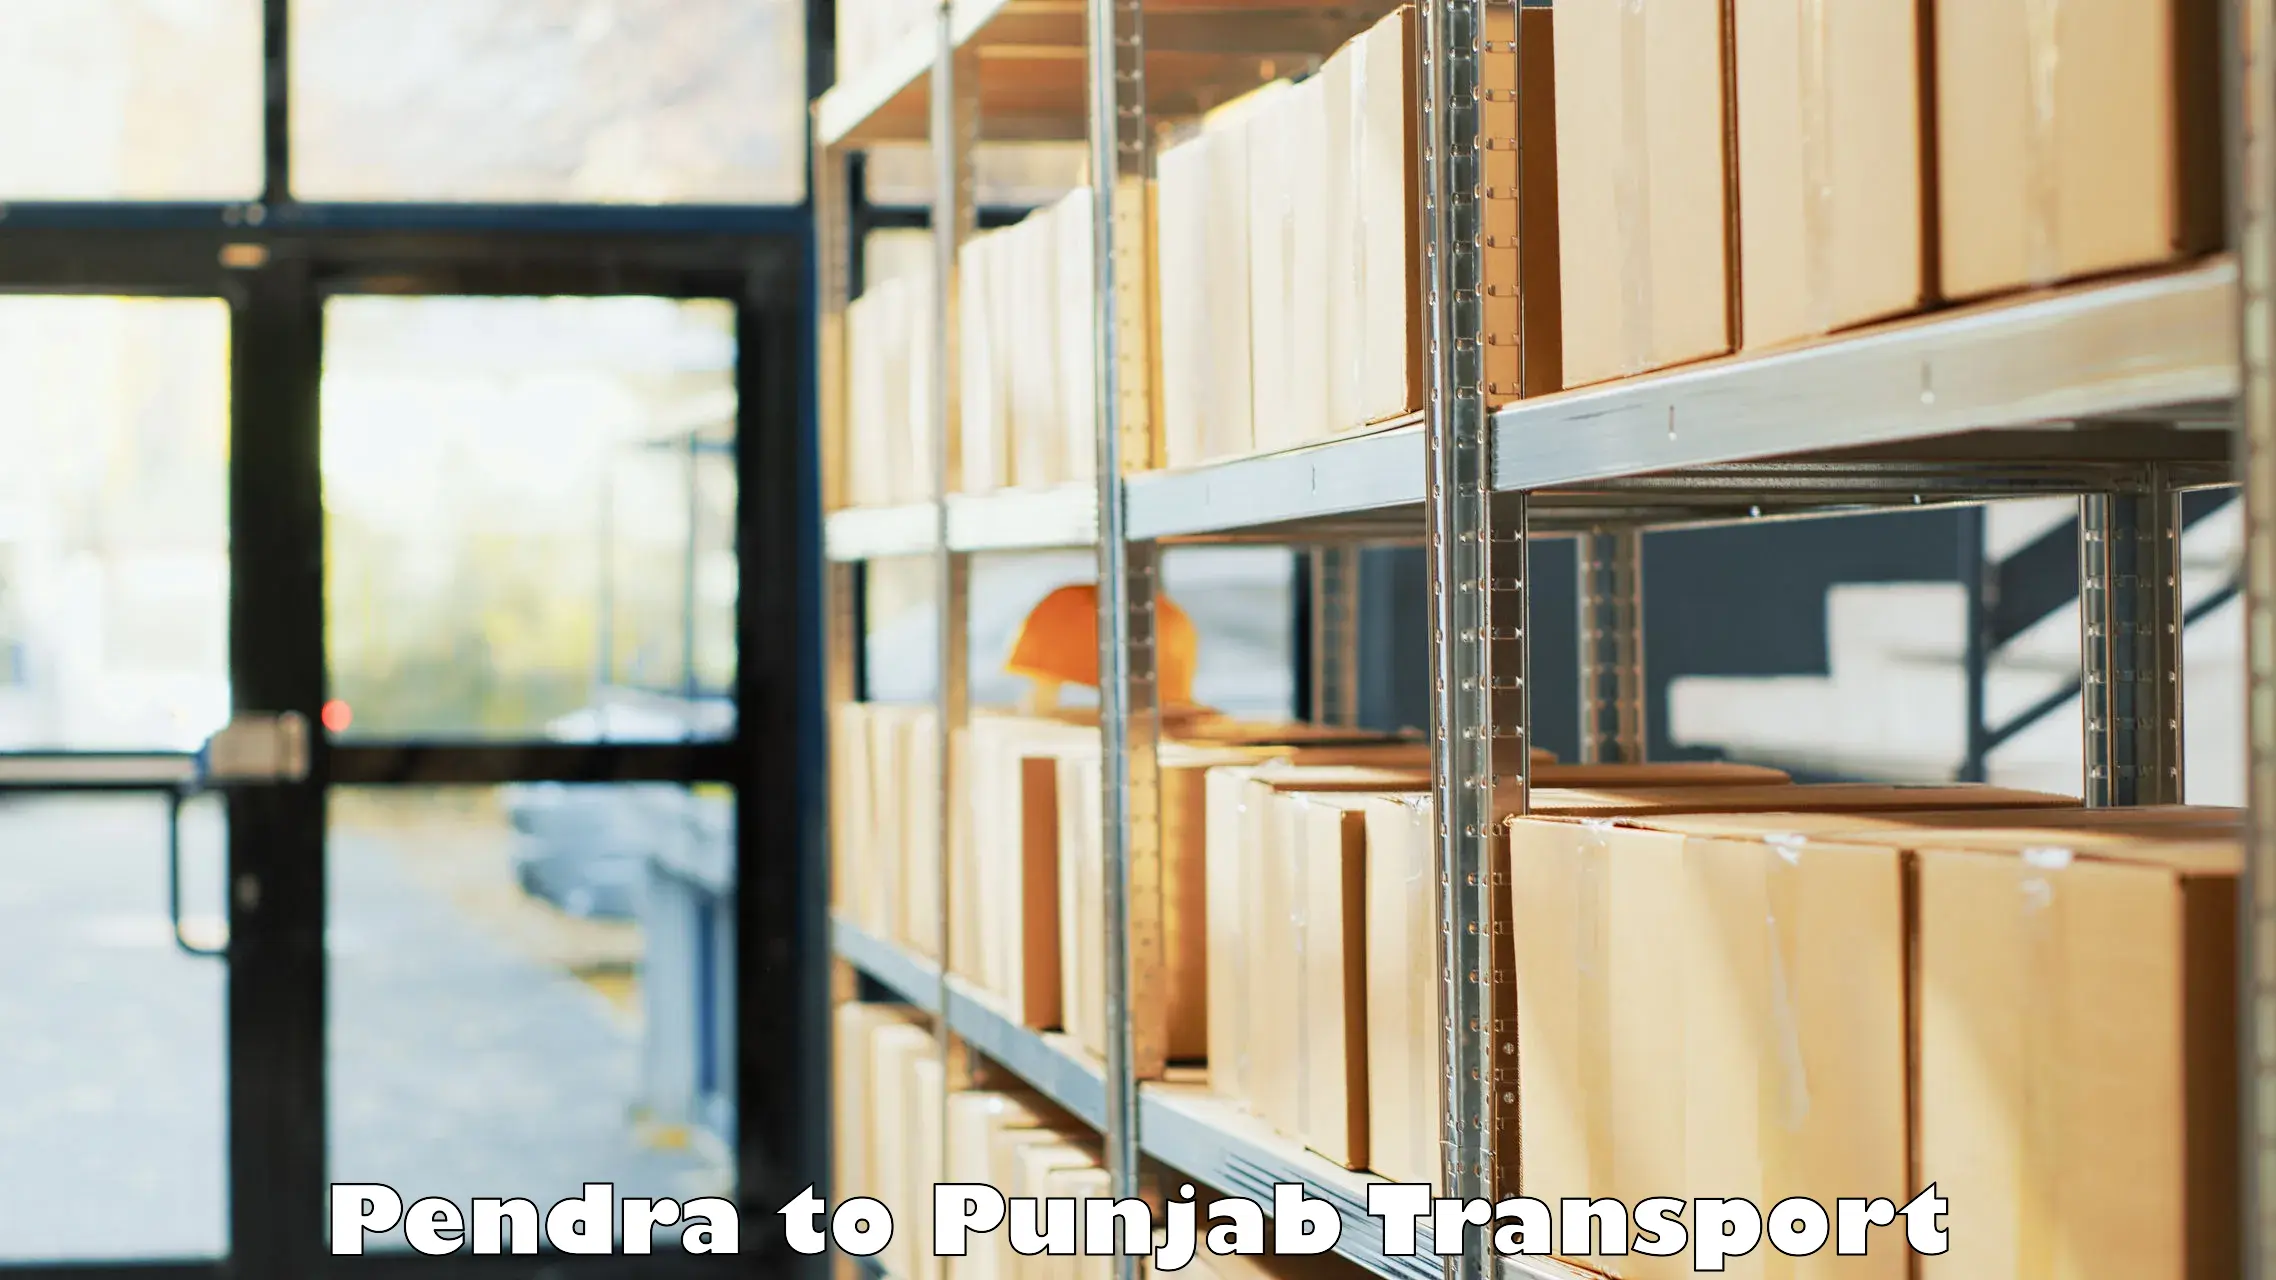 Furniture transport service Pendra to Samana